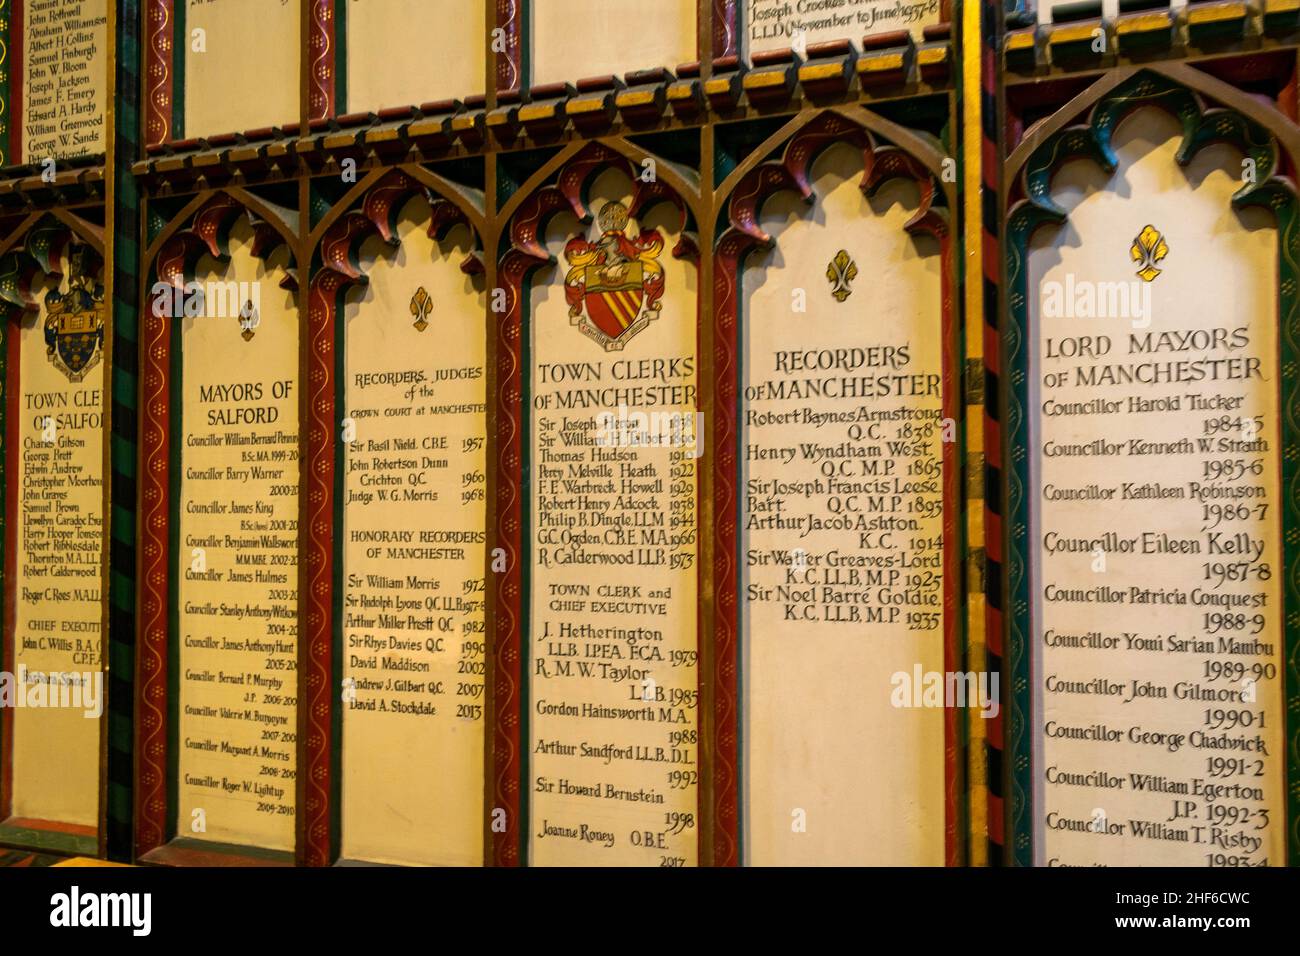 Manchester, Großbritannien - 22nd. September 2019: Innenansicht der Kathedrale von Manchester im Stadtzentrum. Religiöser Hintergrund, einschließlich der RT Revd der Bischof von Manche Stockfoto